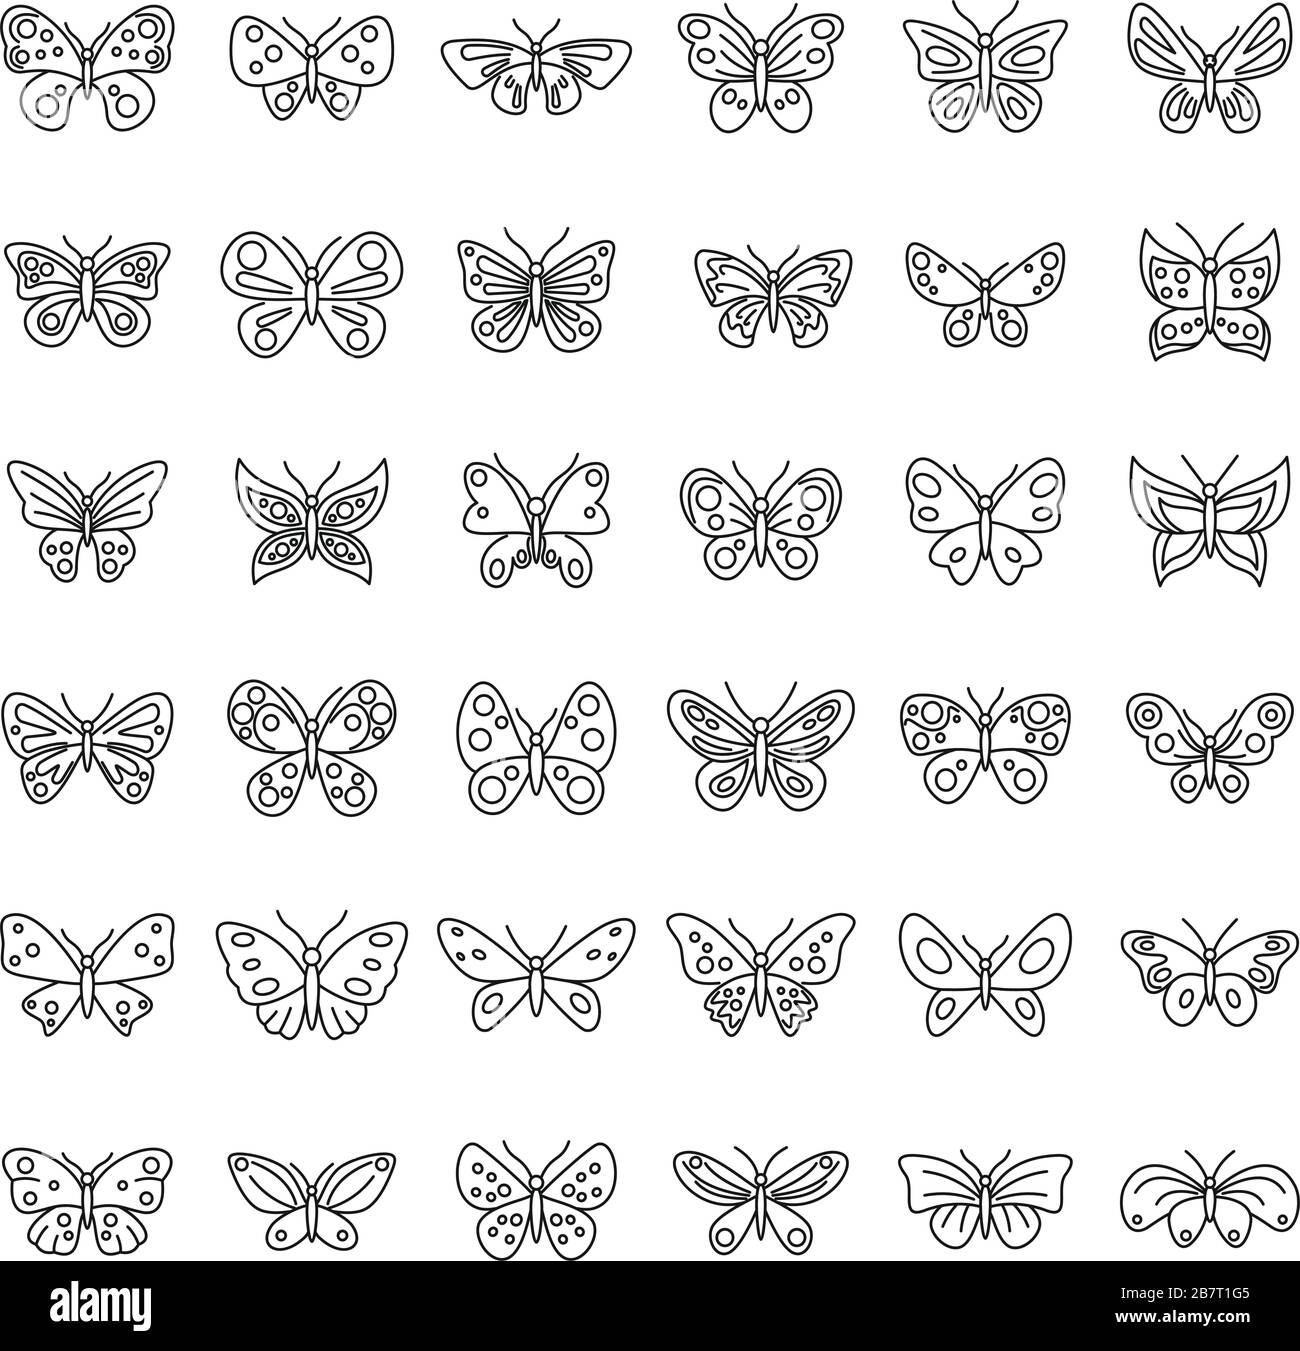 Jeu d'icônes papillon. Ensemble de contours d'icônes vectorielles papillon pour la conception de sites Web isolés sur fond blanc Illustration de Vecteur